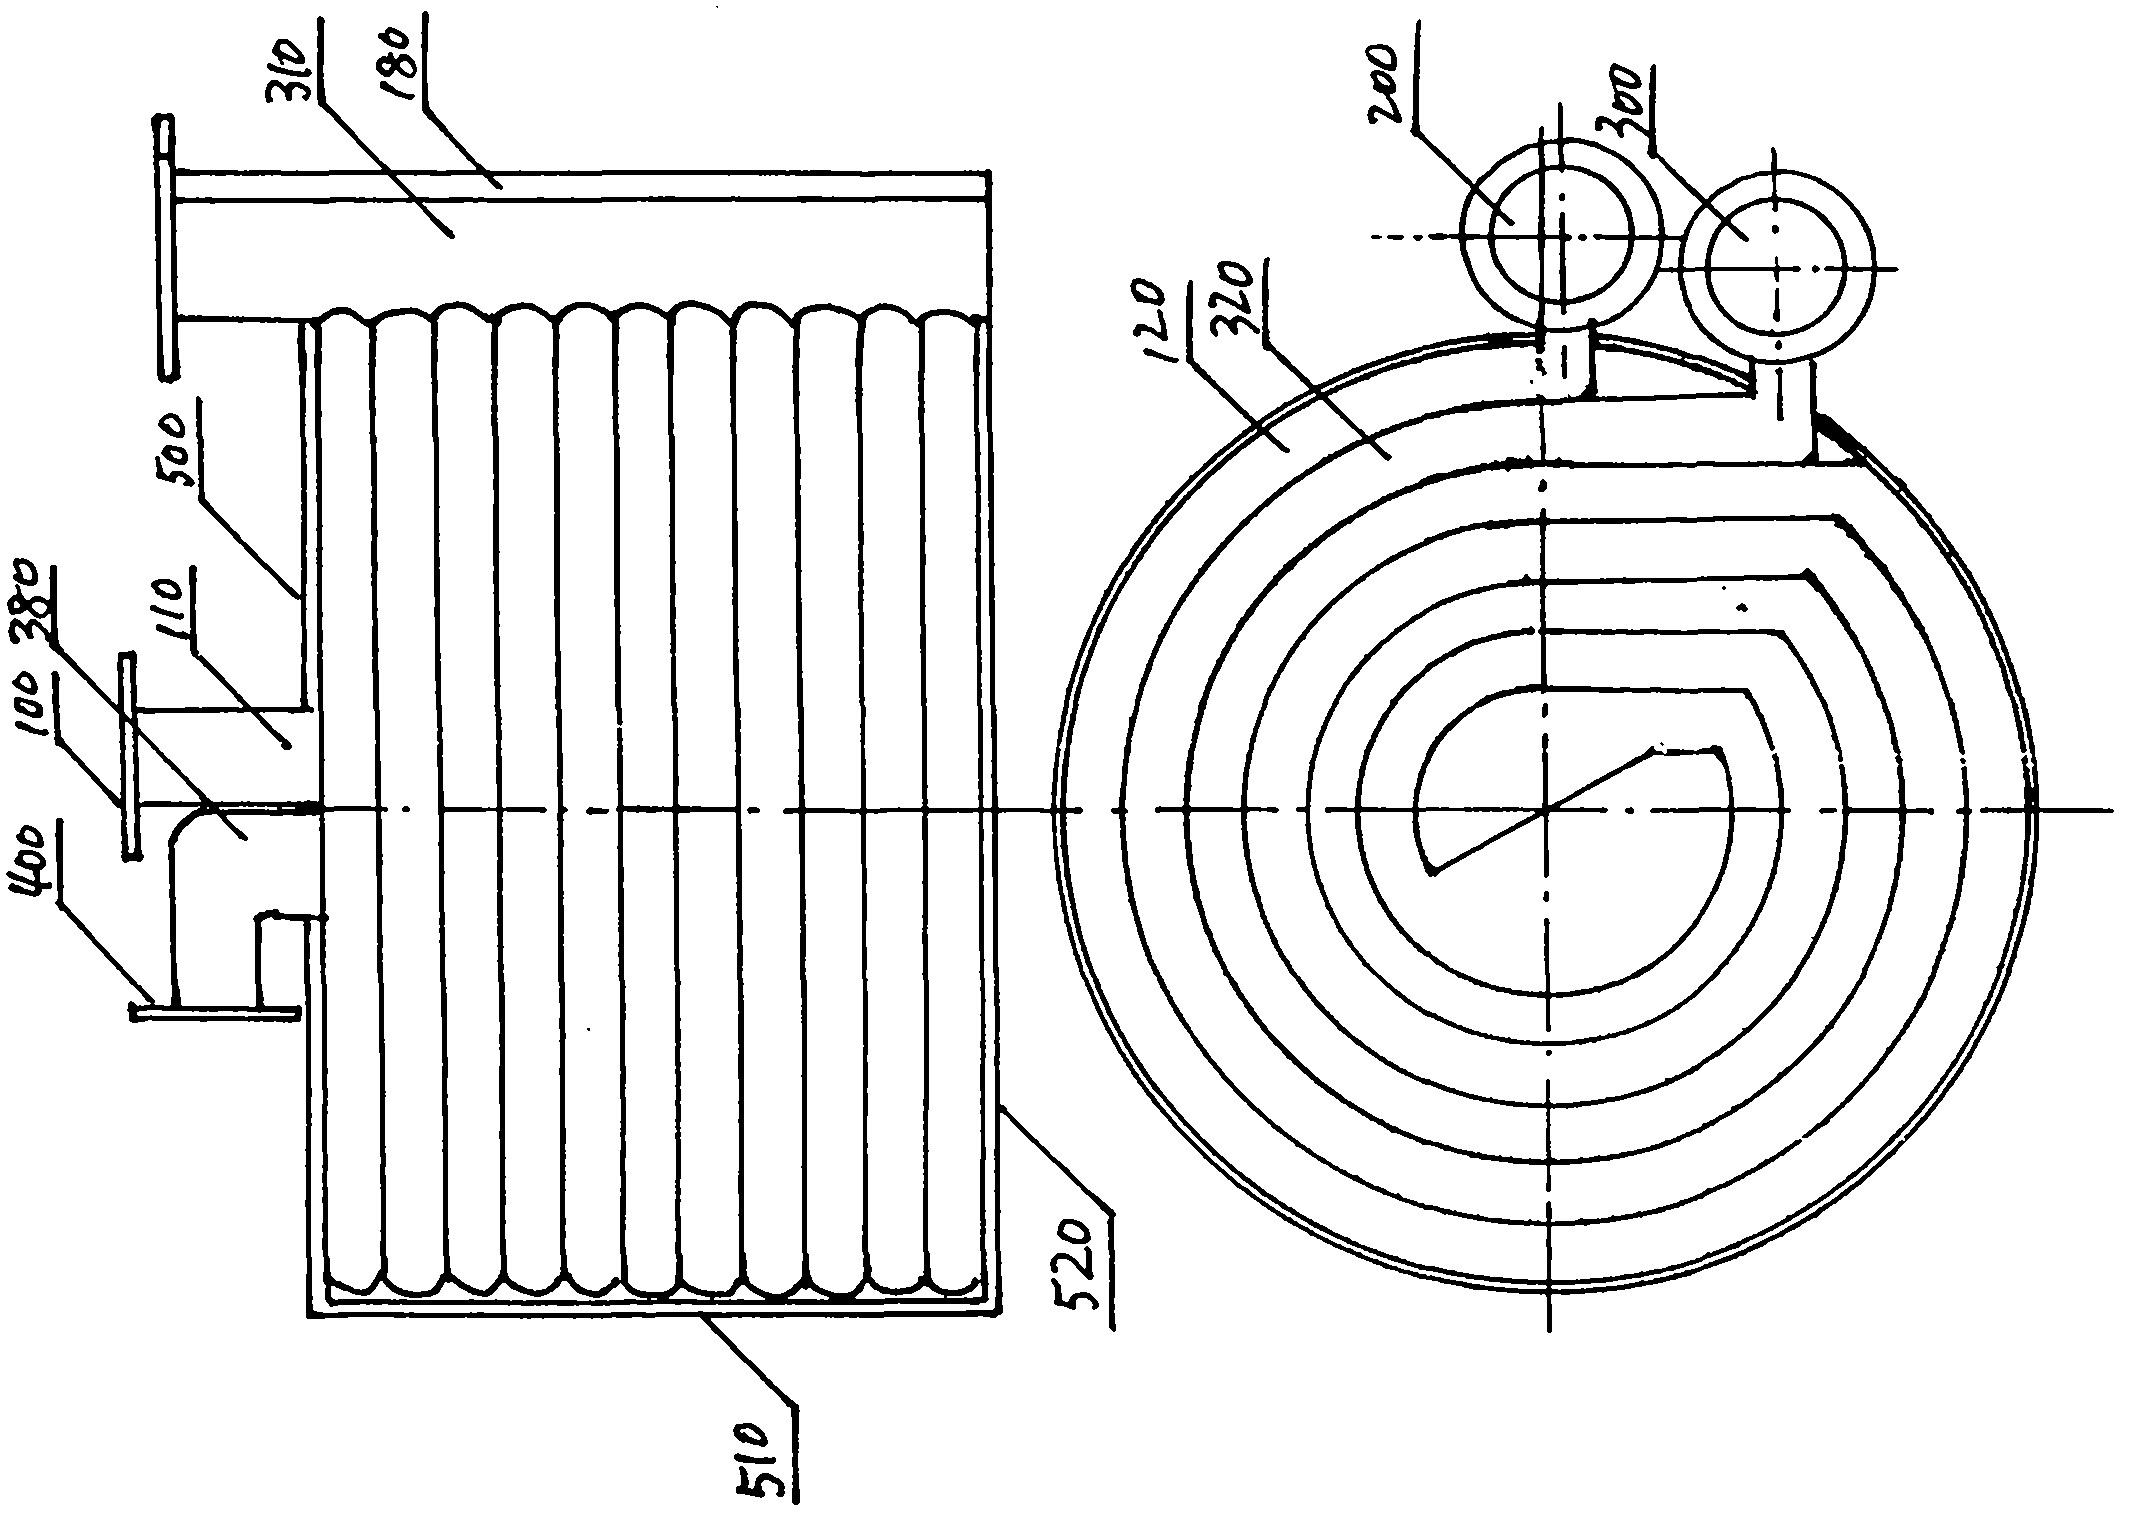 Spiral flow channel heat exchanger